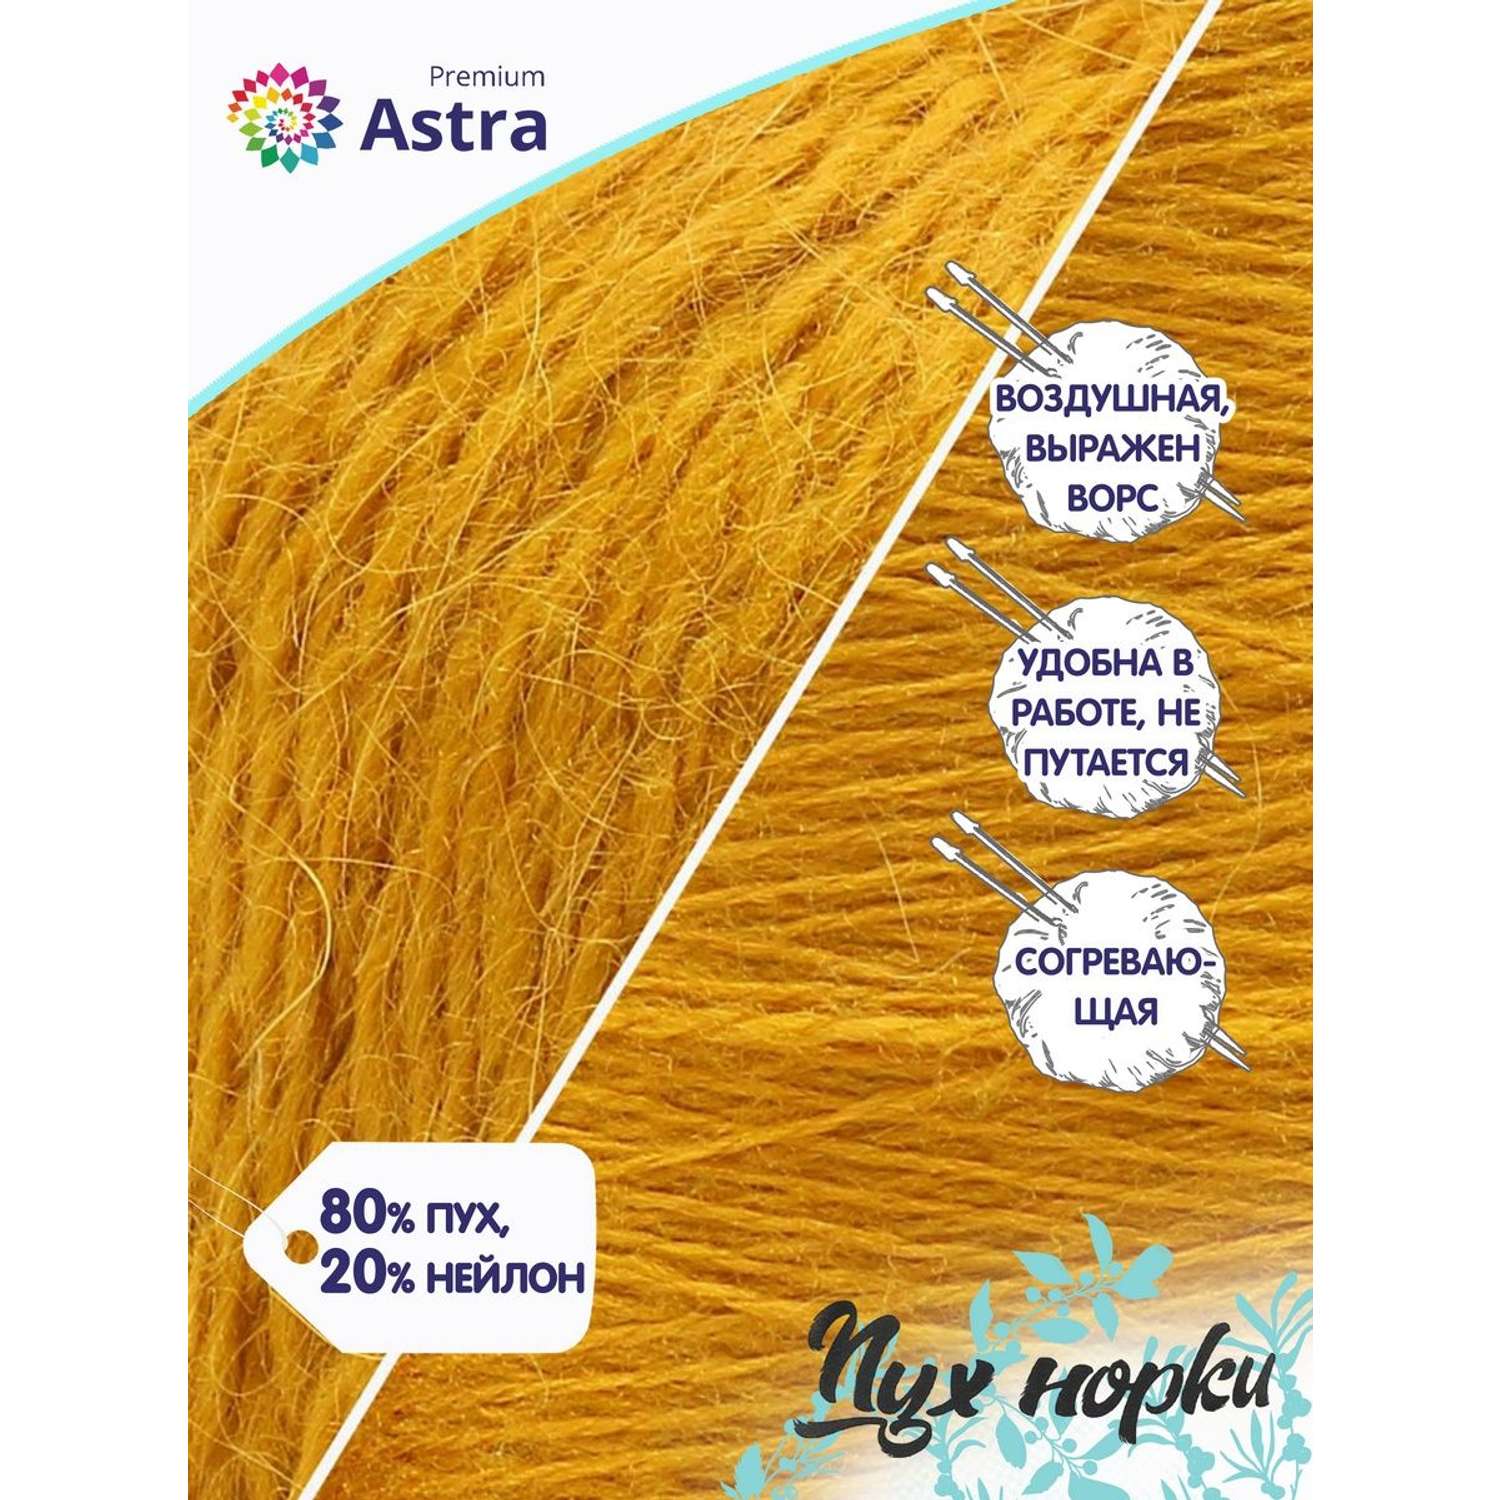 Пряжа Astra Premium Пух норки Mink yarn воздушная с ворсом 50 г 290 м 036 горчичный 1 моток - фото 2